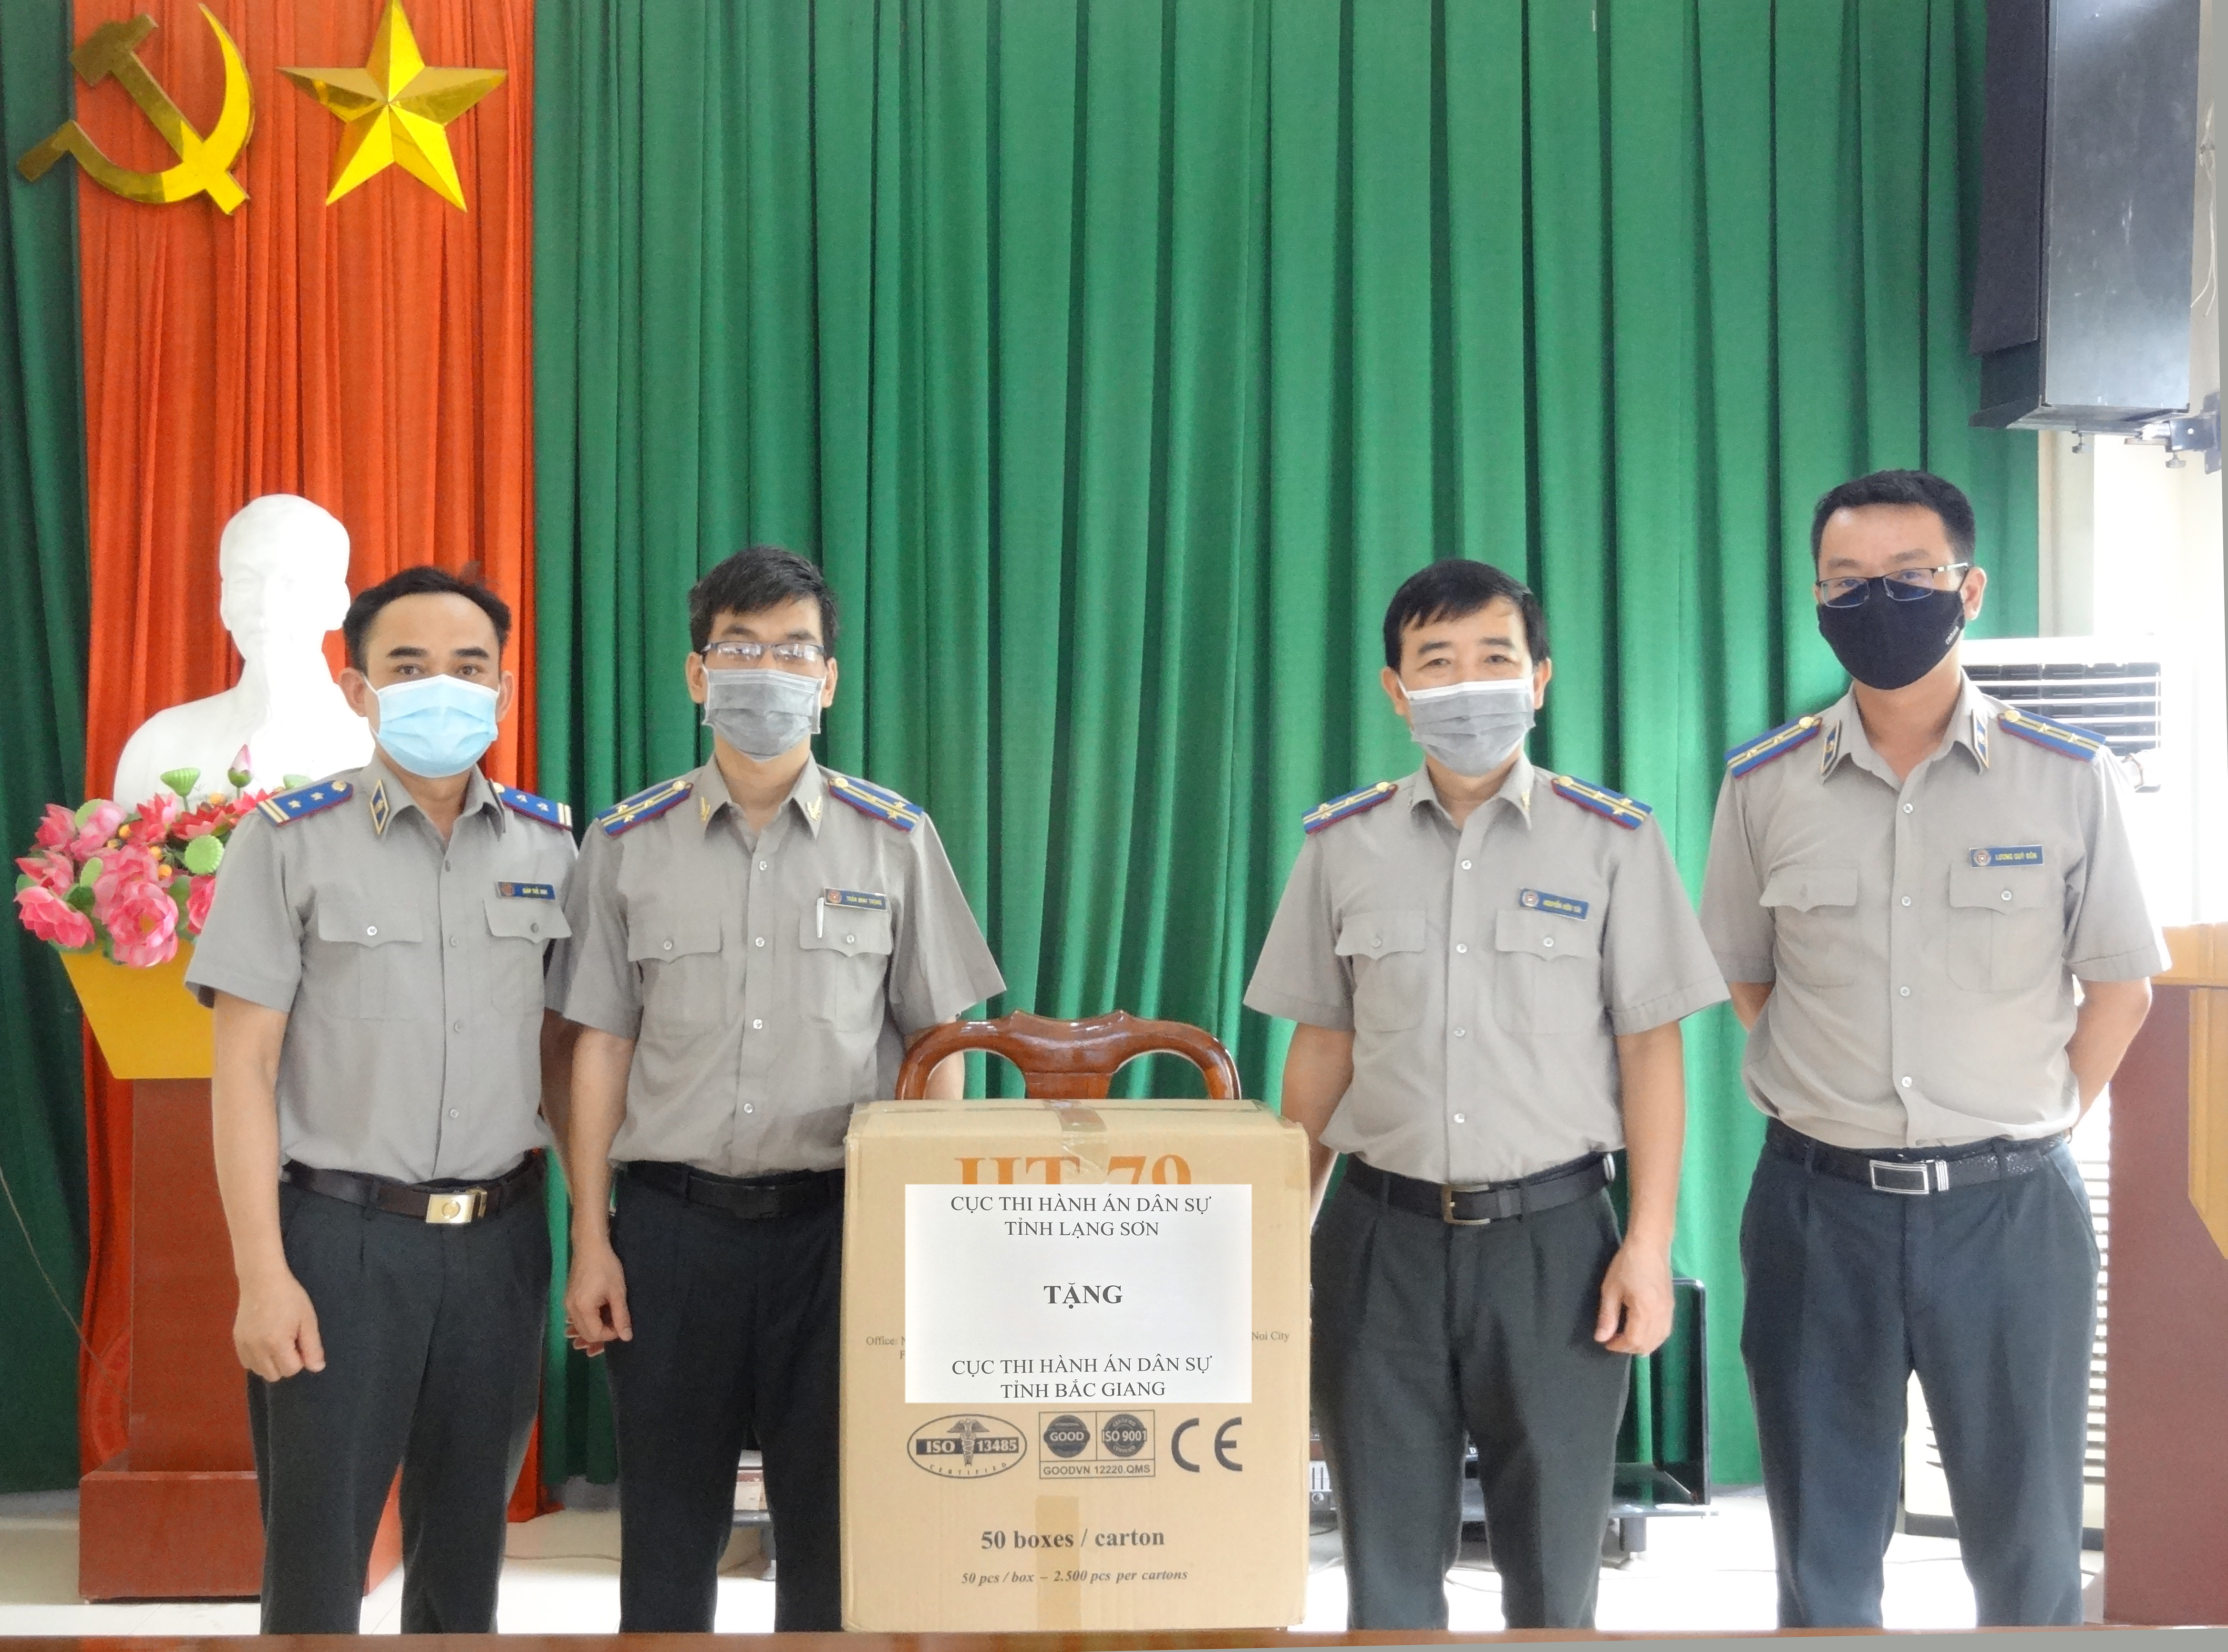 Cục THADS tỉnh Bắc Giang tiếp nhận 5000 chiếc khẩu trang y tế từ Cục THADS tỉnh Lạng Sơn